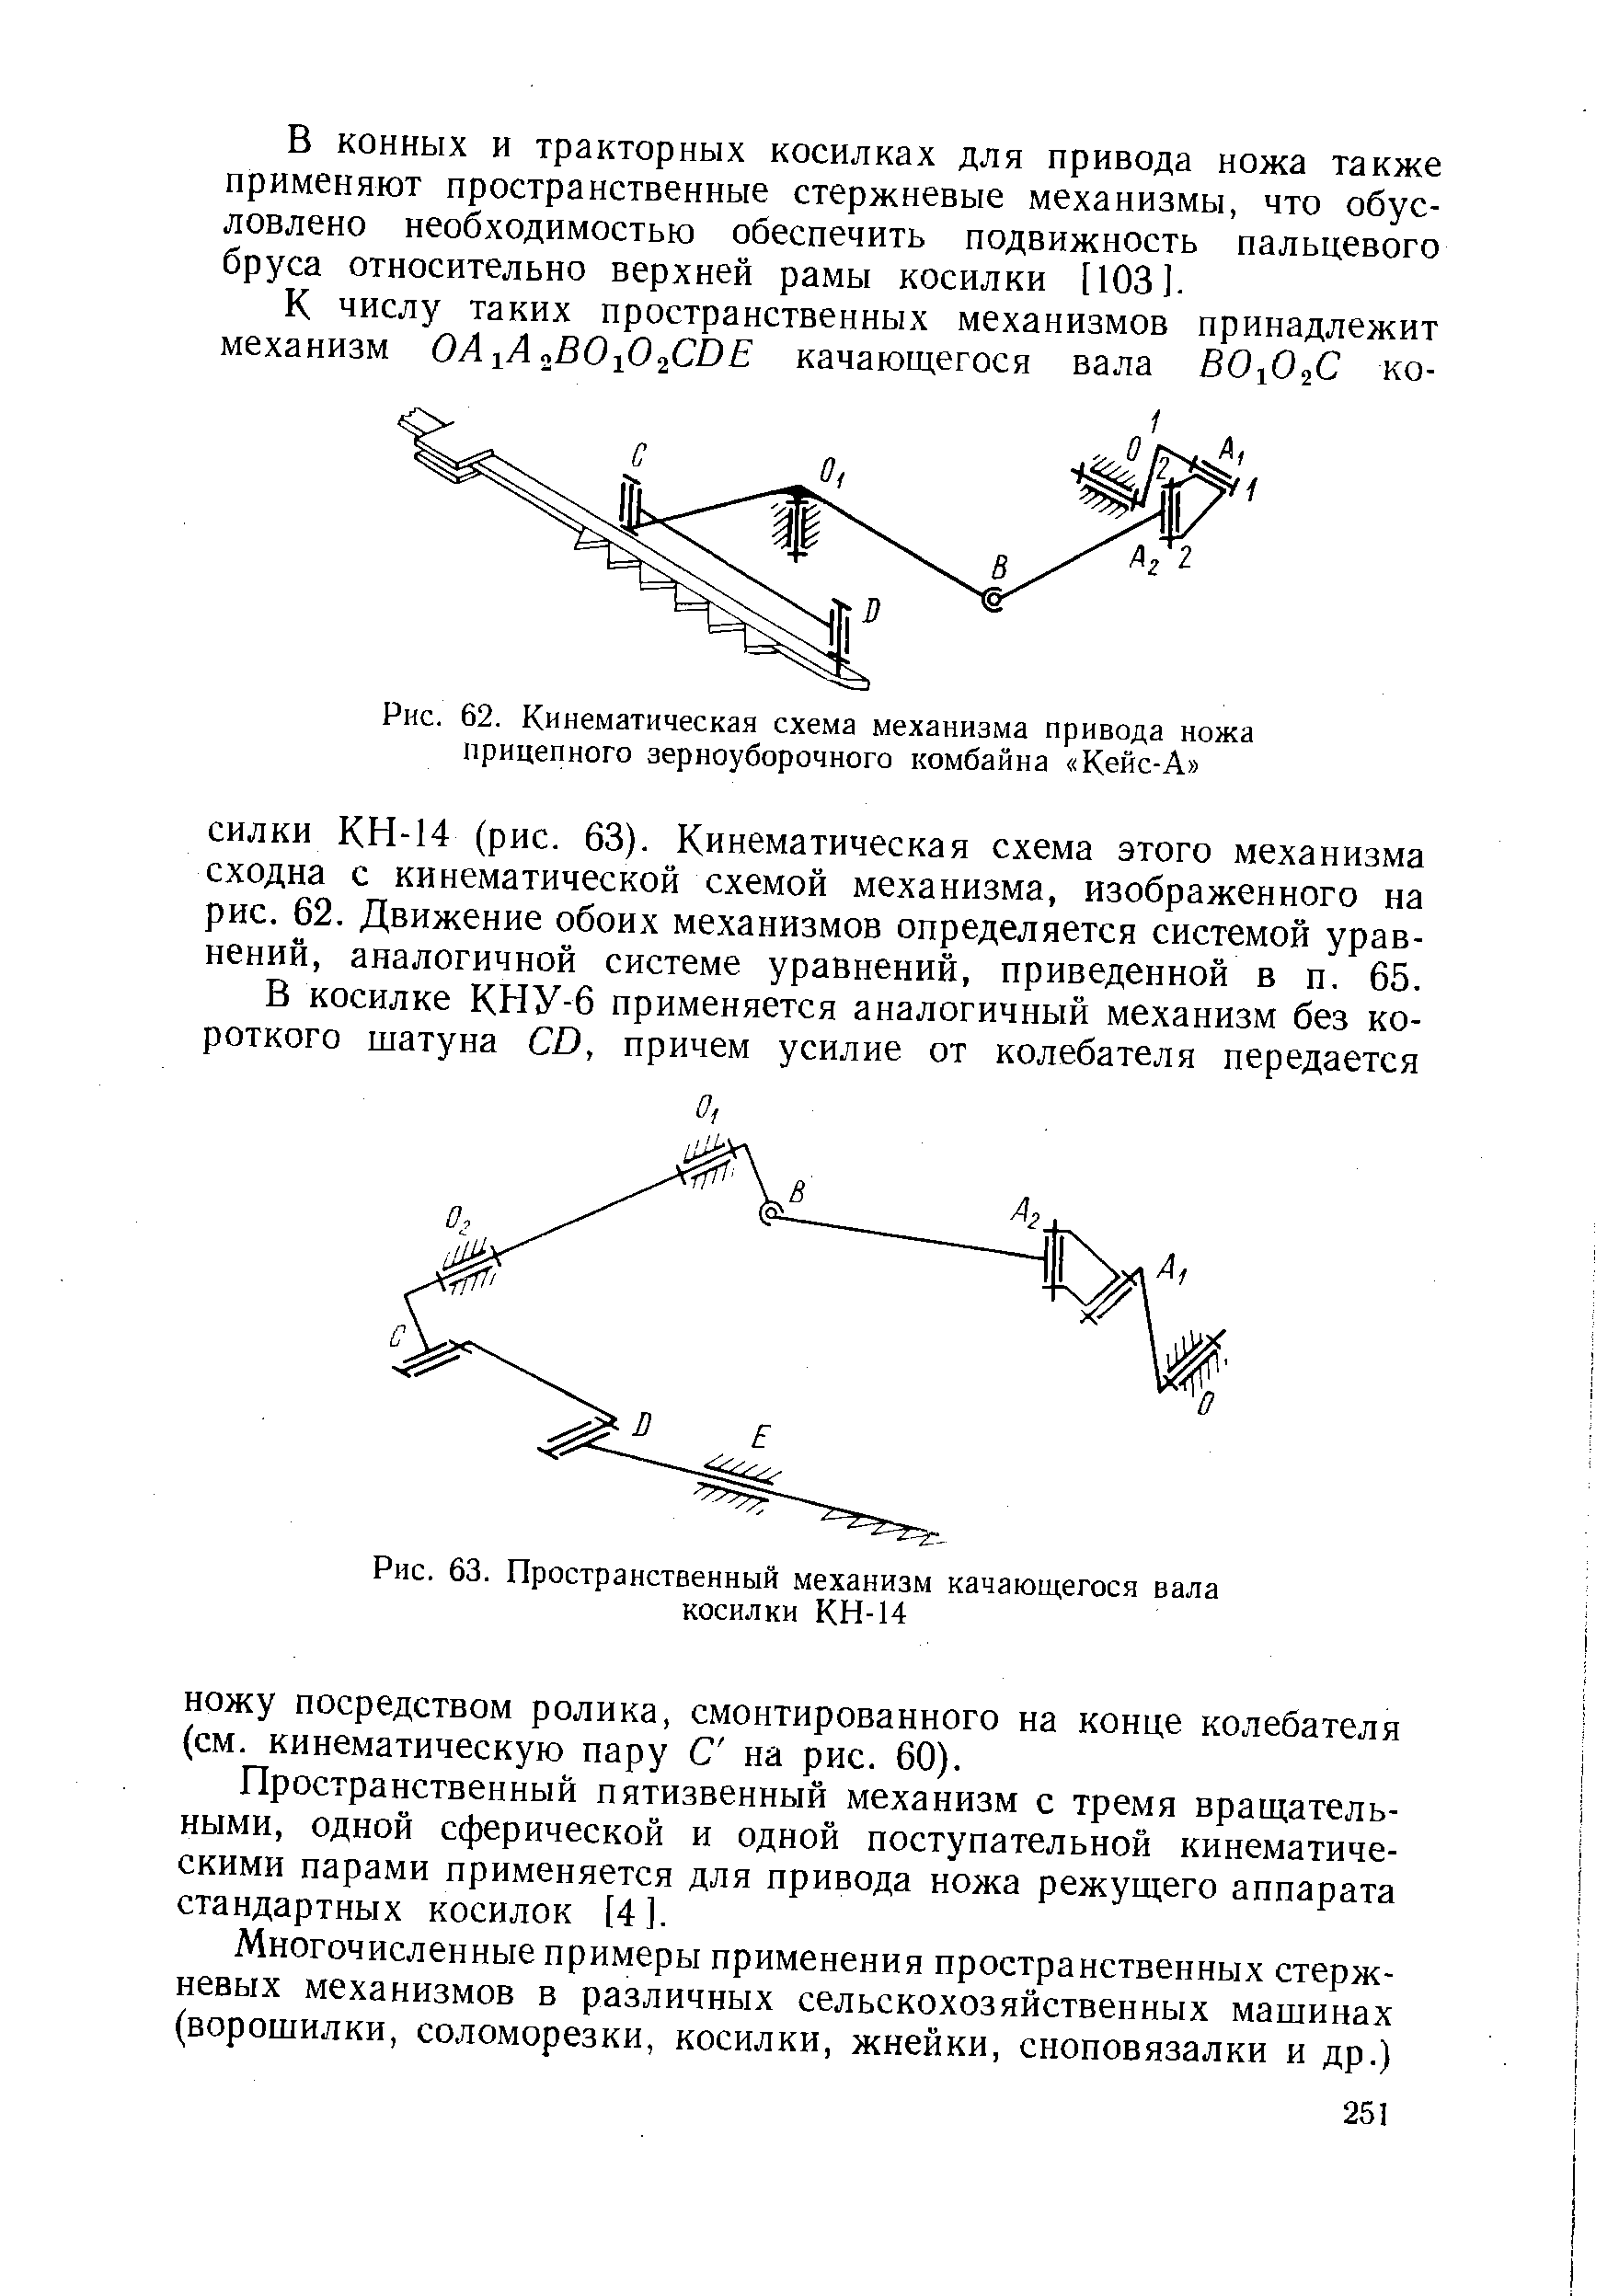 Рис. 62. Кинематическая схема механизма привода ножа прицепного зерноуборочного комбайна Кейс-А 
